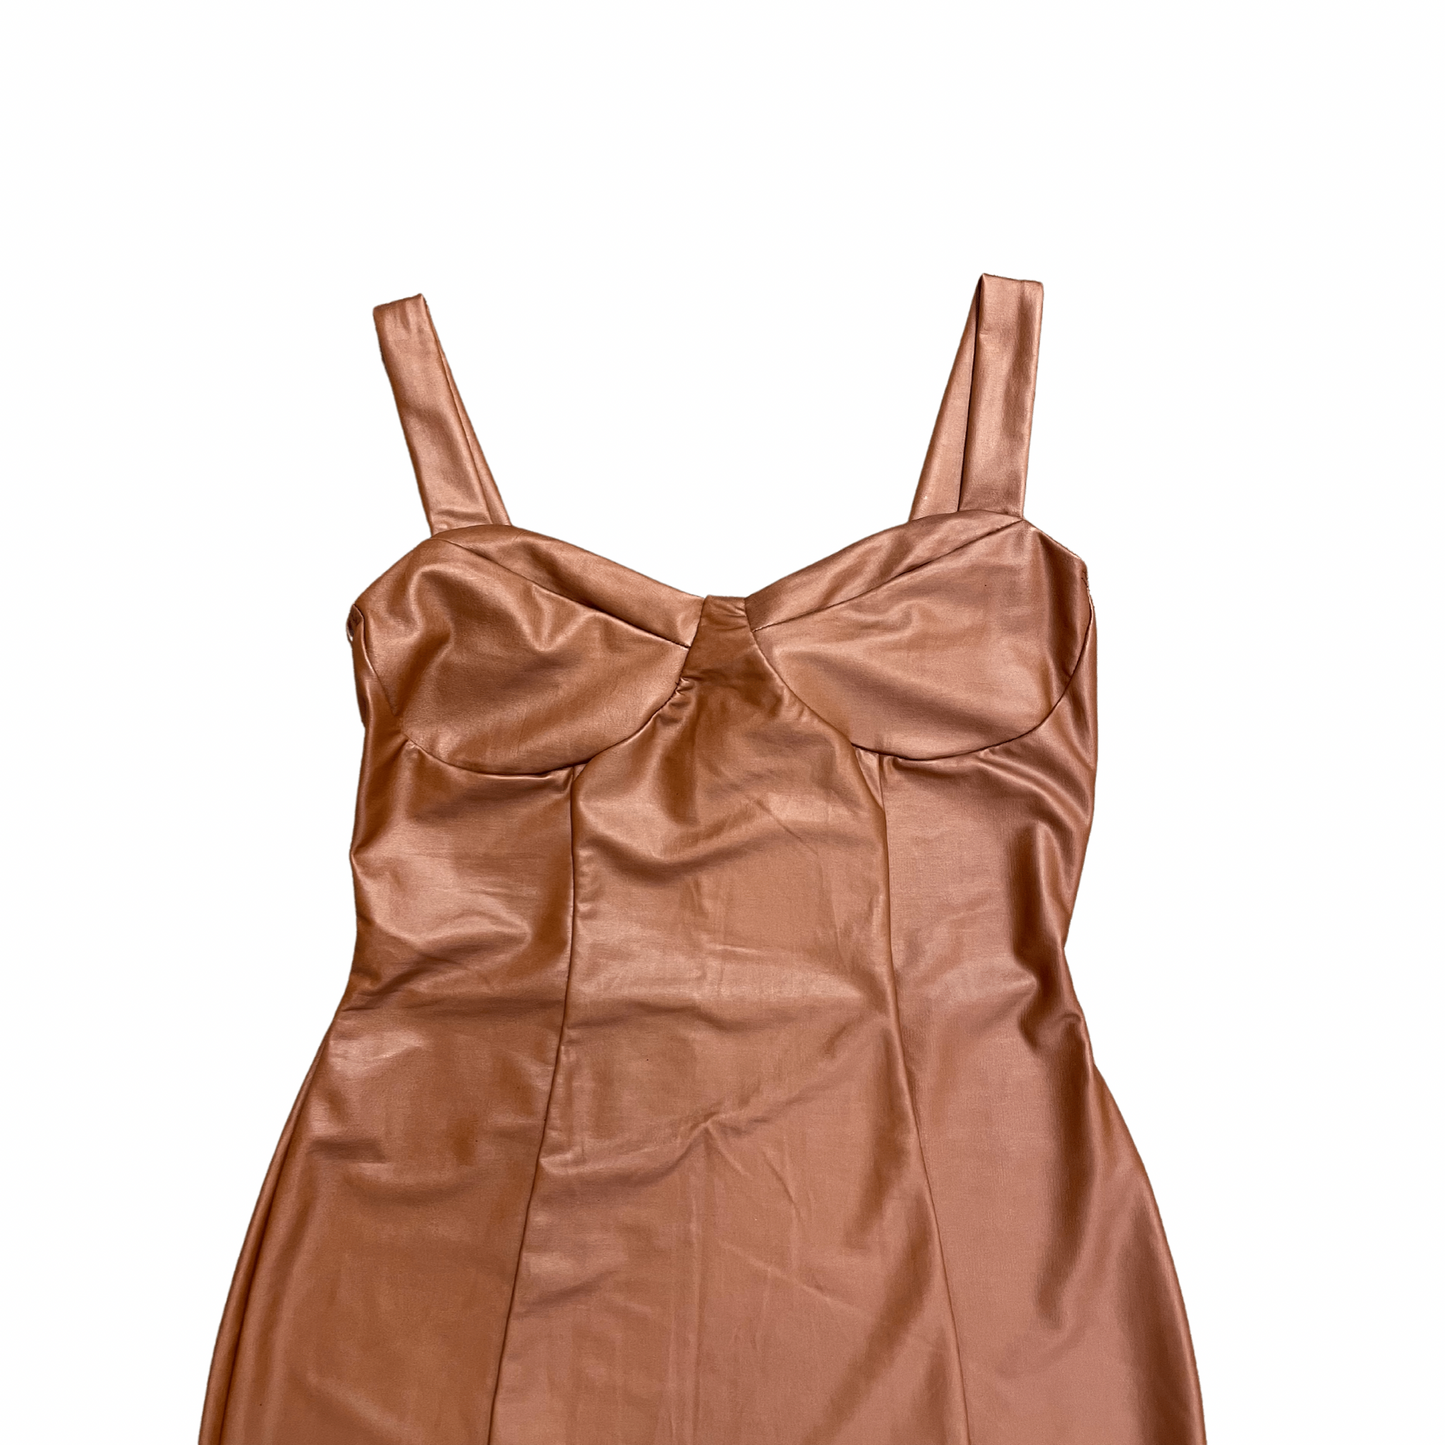 Uptown Brown Leather Mini Dress (S-L)